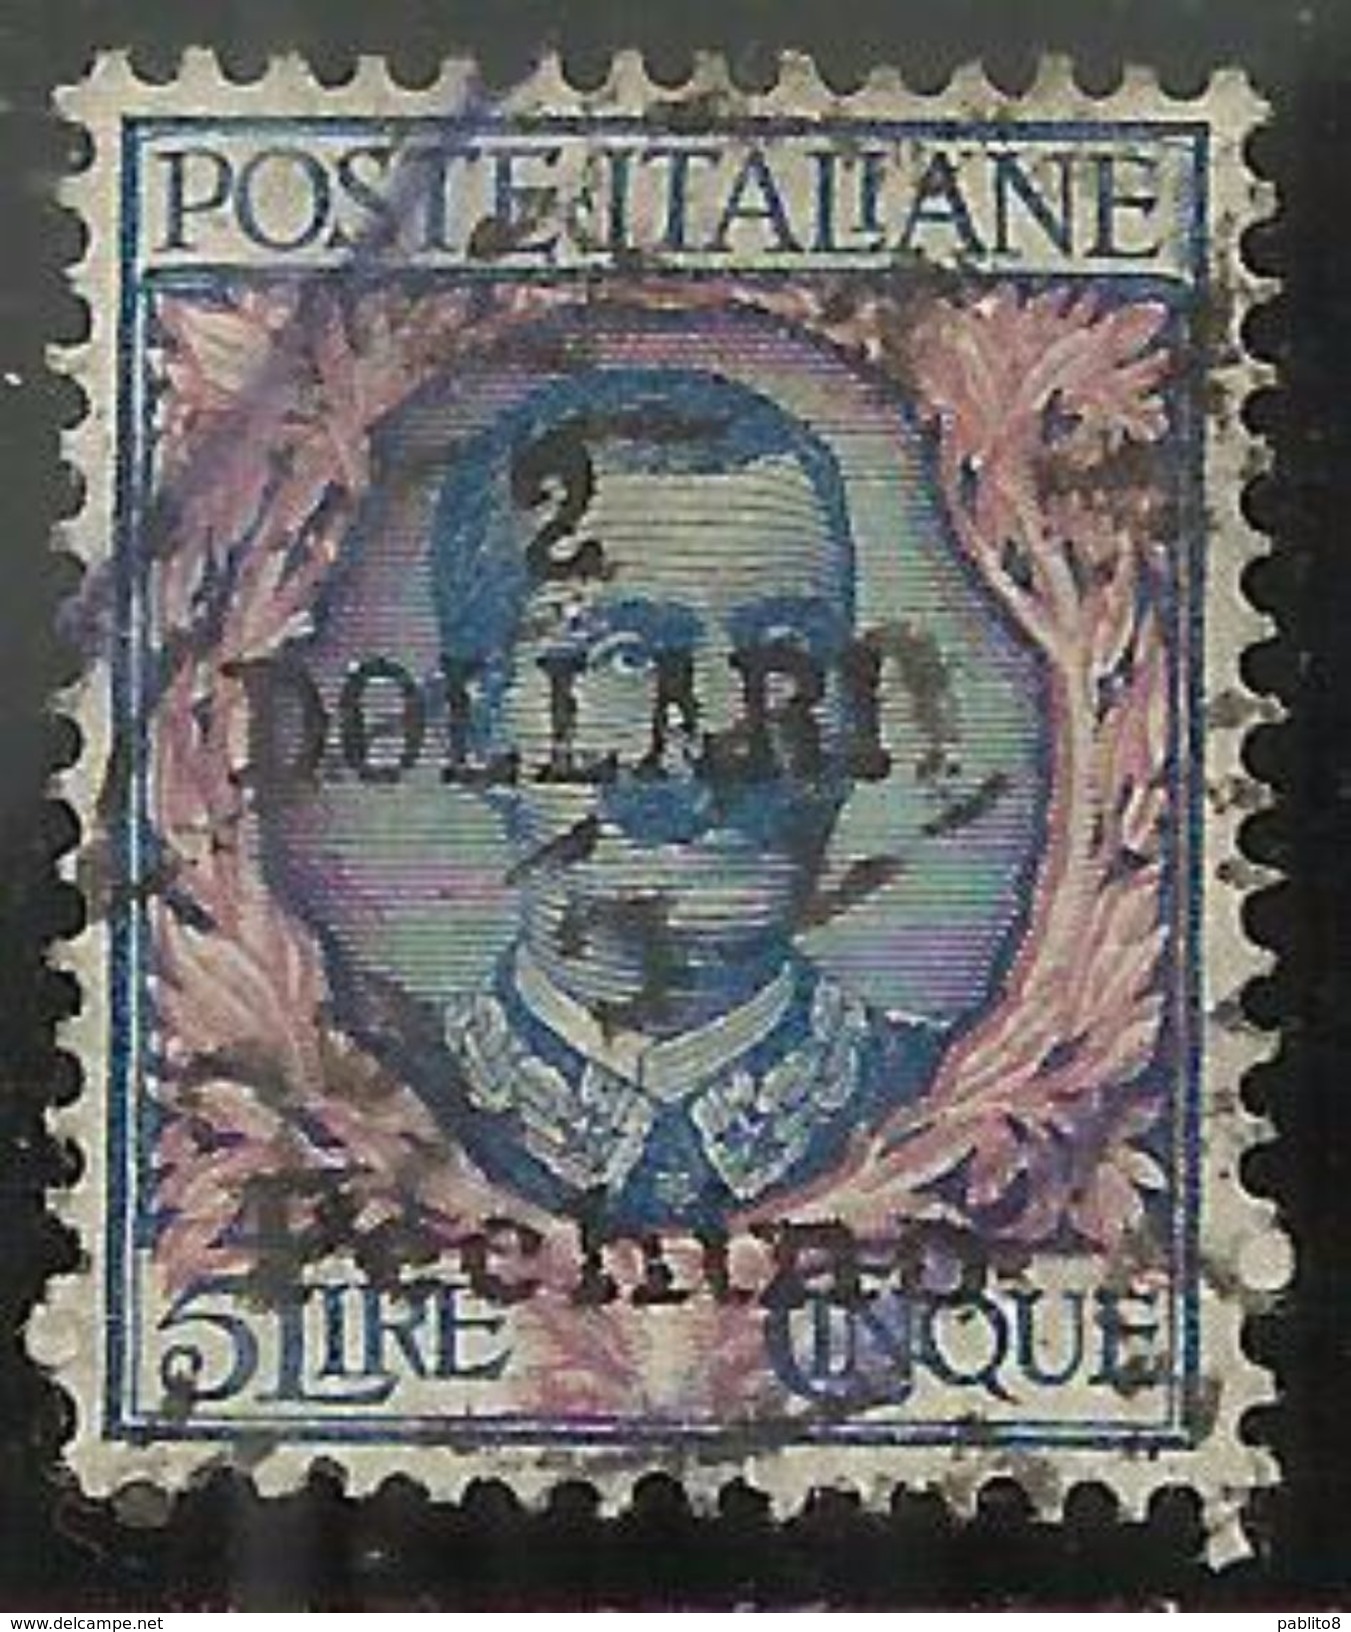 PECHINO BEIJING 1919 1920 SOPRASTAMPATO D'ITALIA ITALY OVERPRINTED 2 DOLLARI DOLLARS SU LIRE 5 USATO USED CERTIFICATO - Pechino